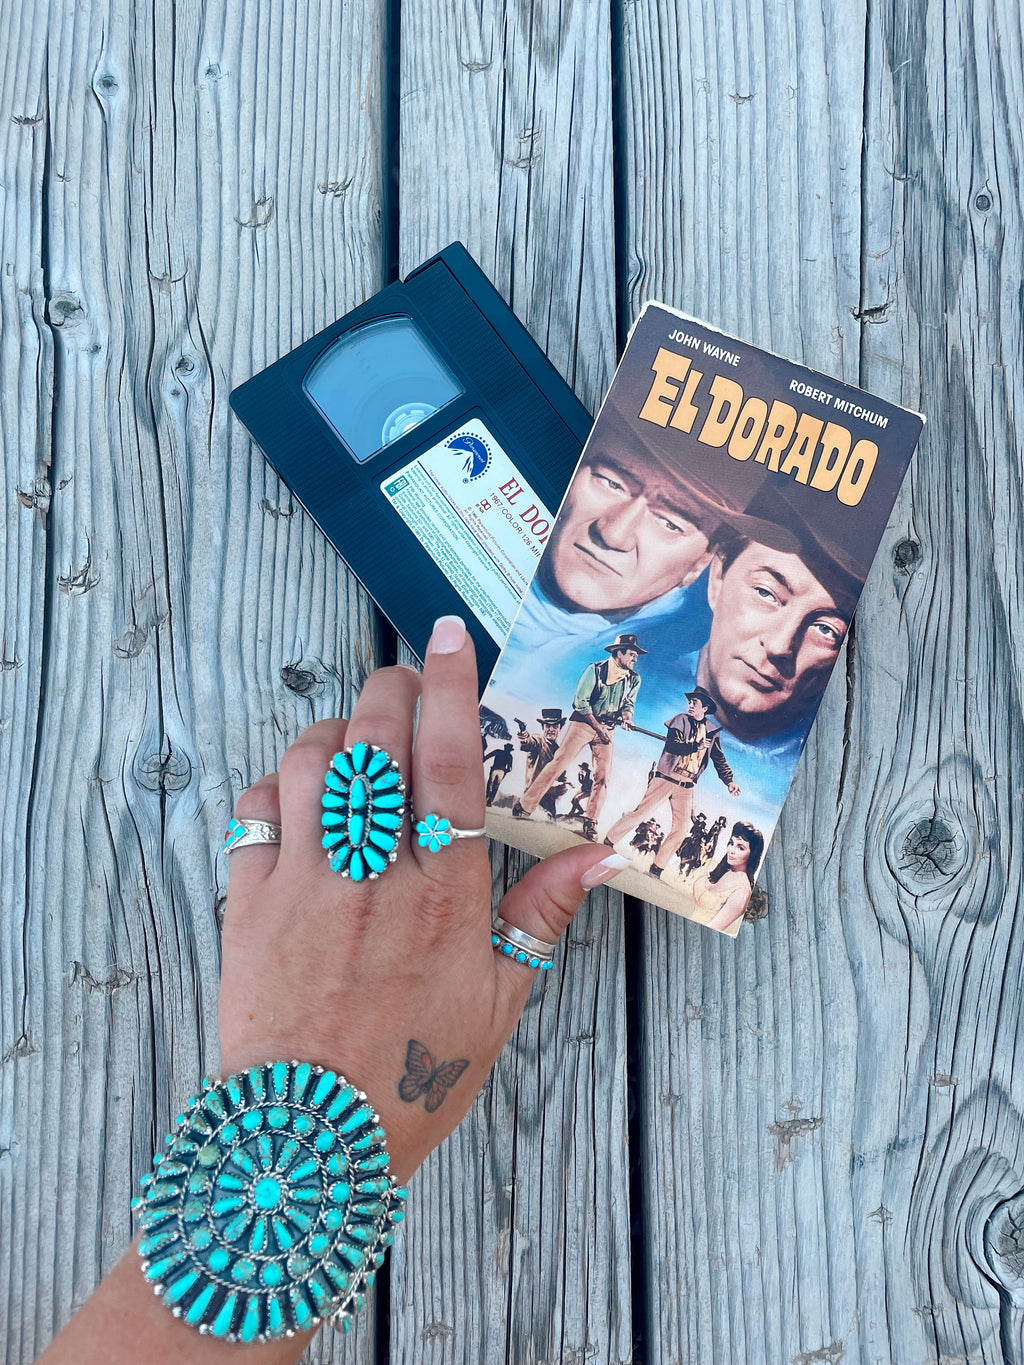 Vintage El Dorado VHS